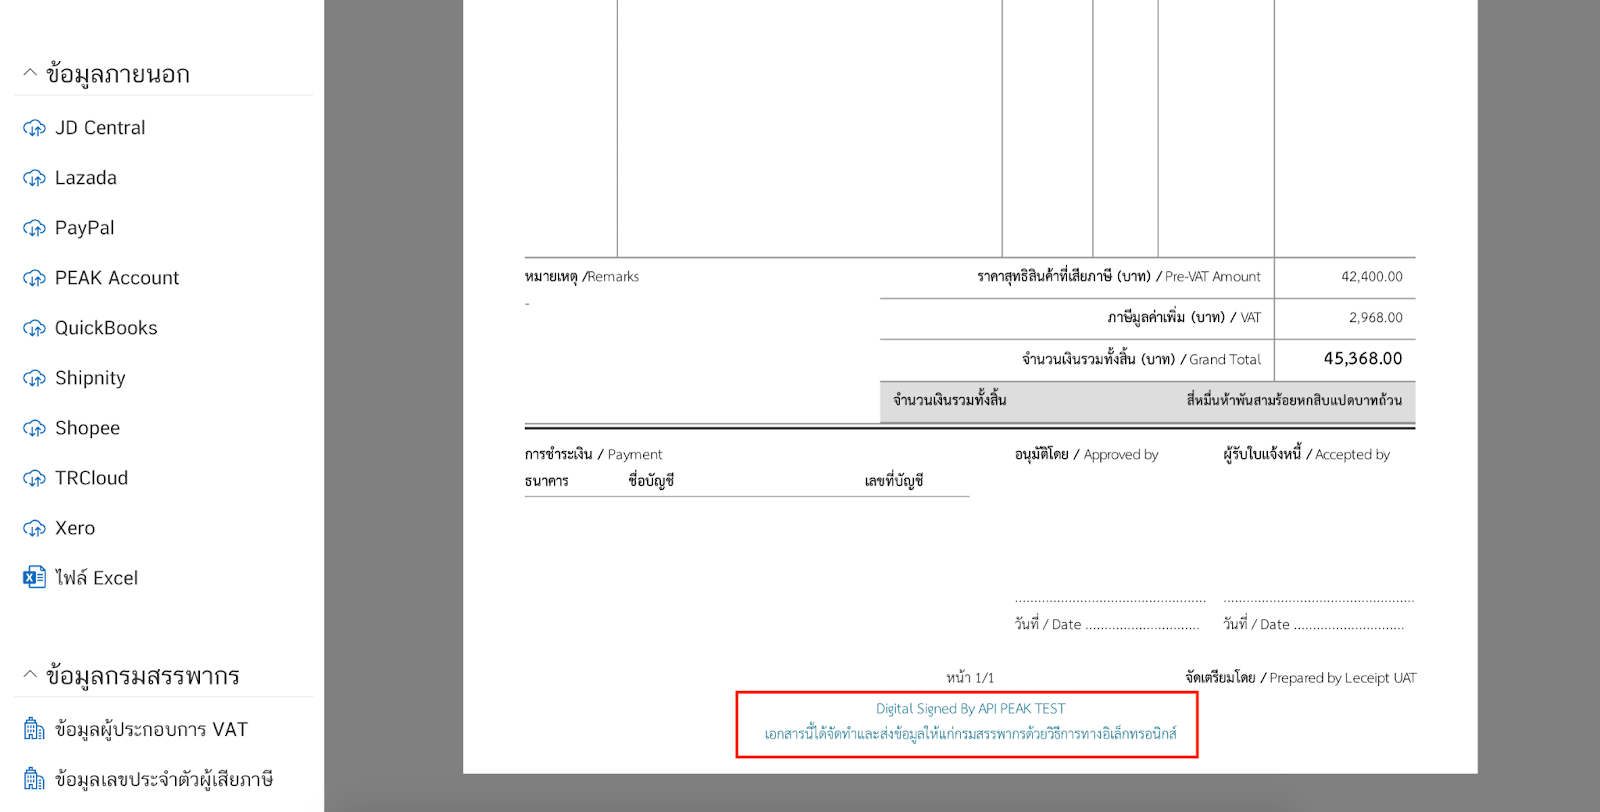 โดยเมื่อกดดูไฟล์ PDF แล้ว จะเห็นว่าเอกสารจะมีลายเซ็นดิจิทัล (Digital Signature) จะมีข้อความกำกับที่ท้ายเอกสาร ดังรูปด้านล่าง